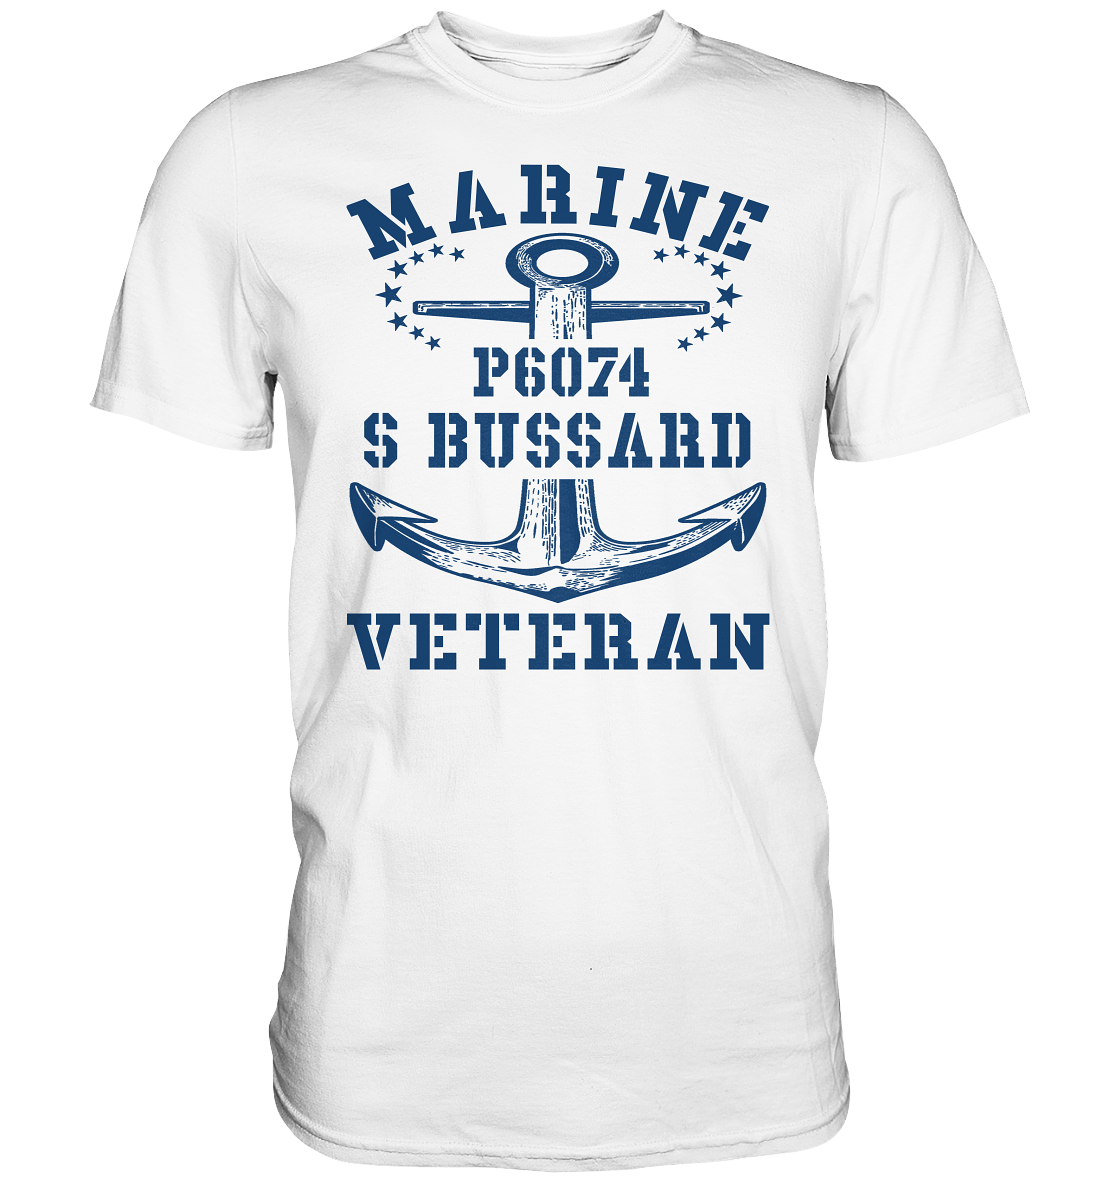 P6074 S BUSSARD Marine Veteran - Premium Shirt